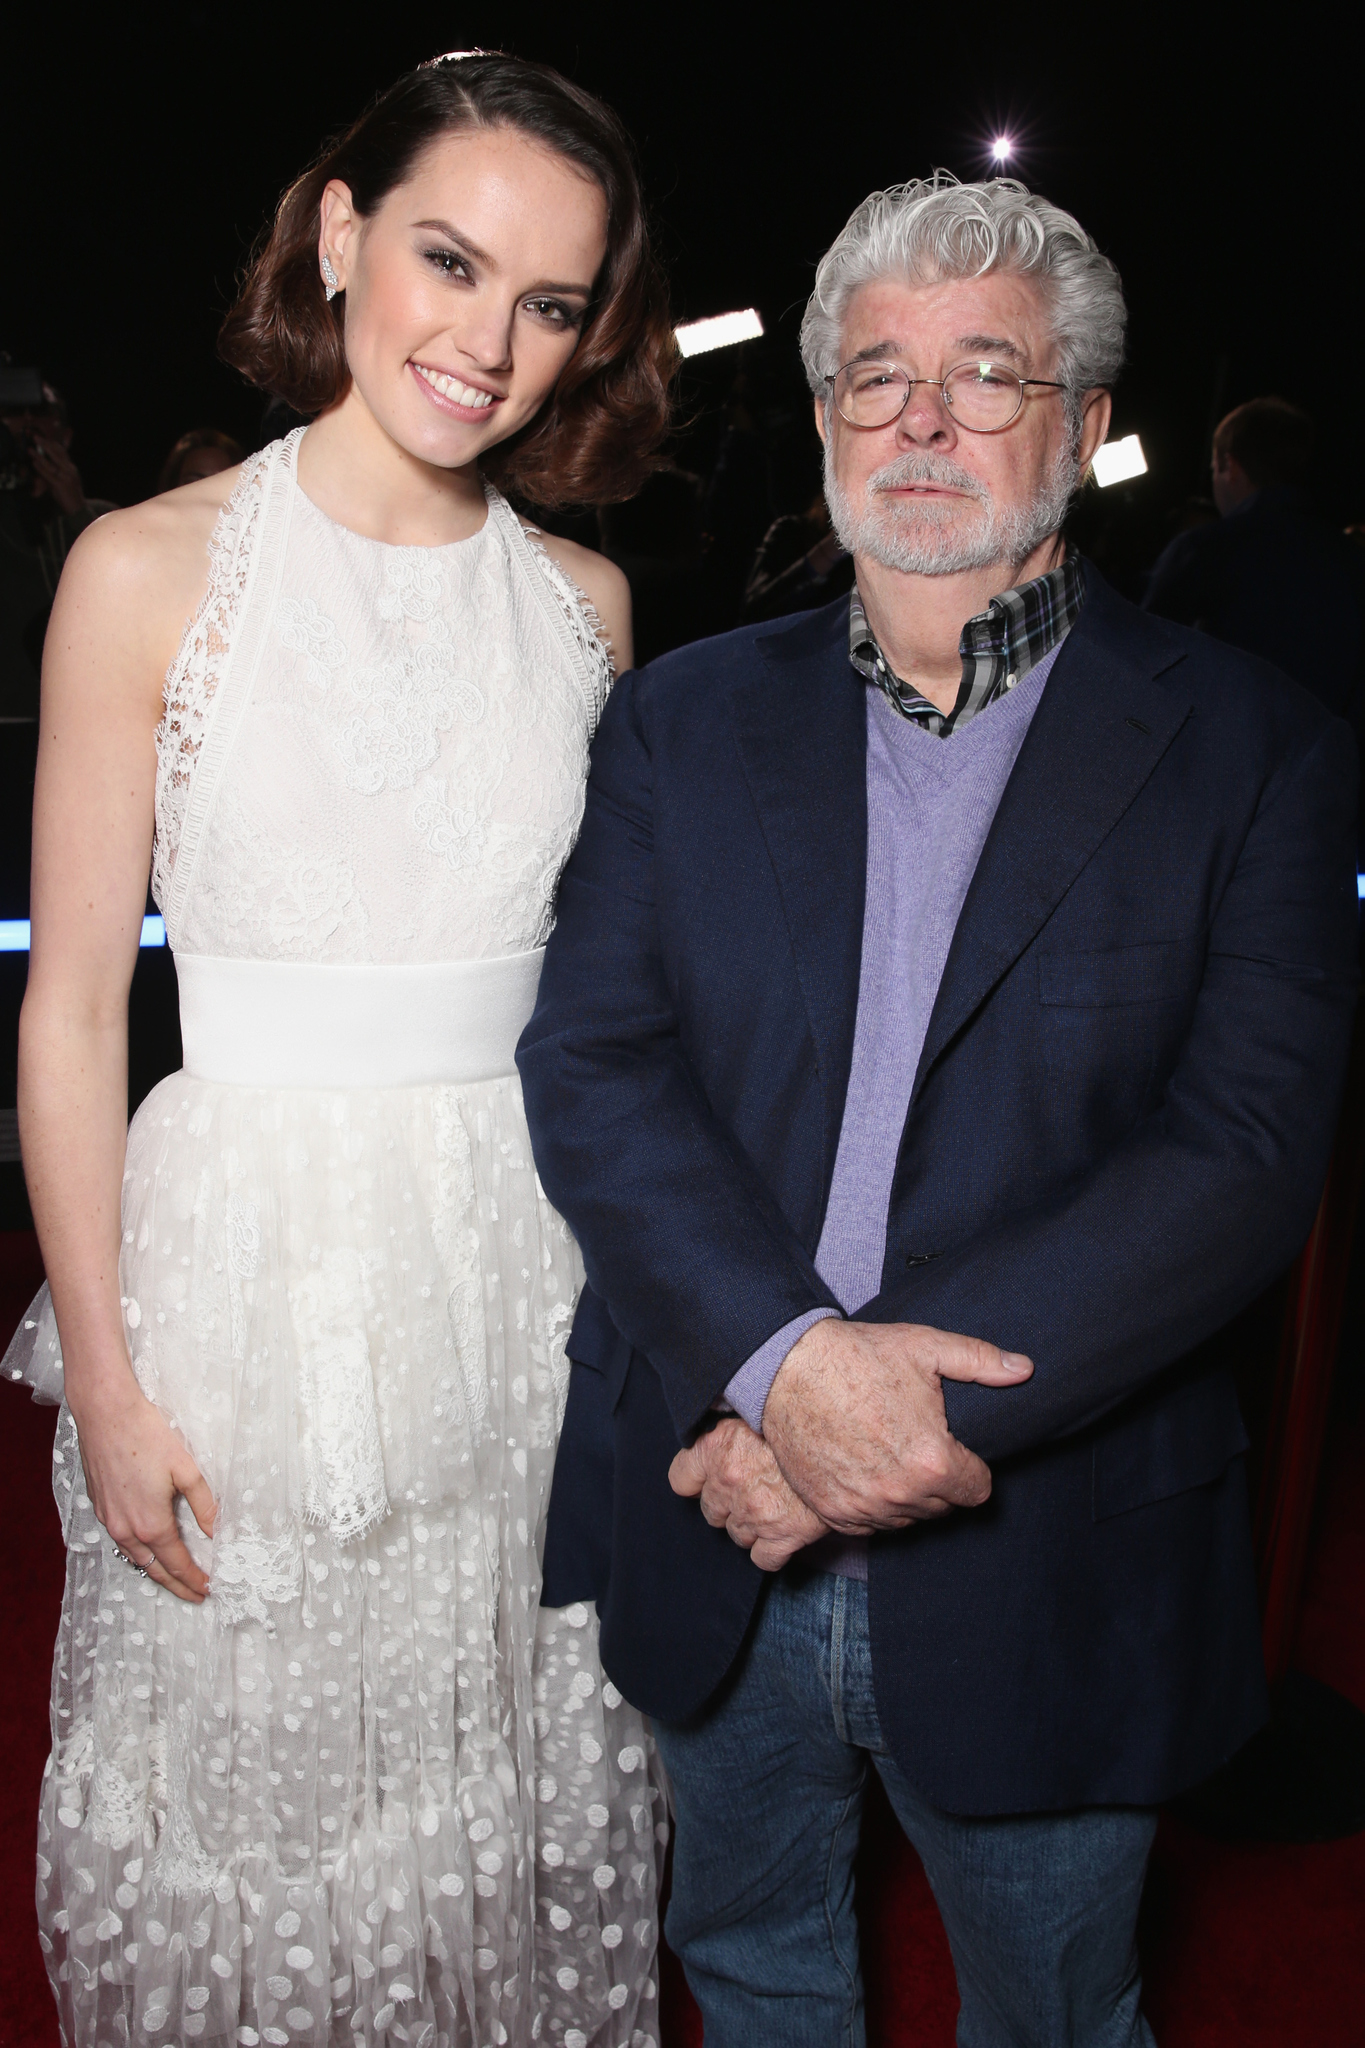 George Lucas and Daisy Ridley at event of Zvaigzdziu karai: galia nubunda (2015)